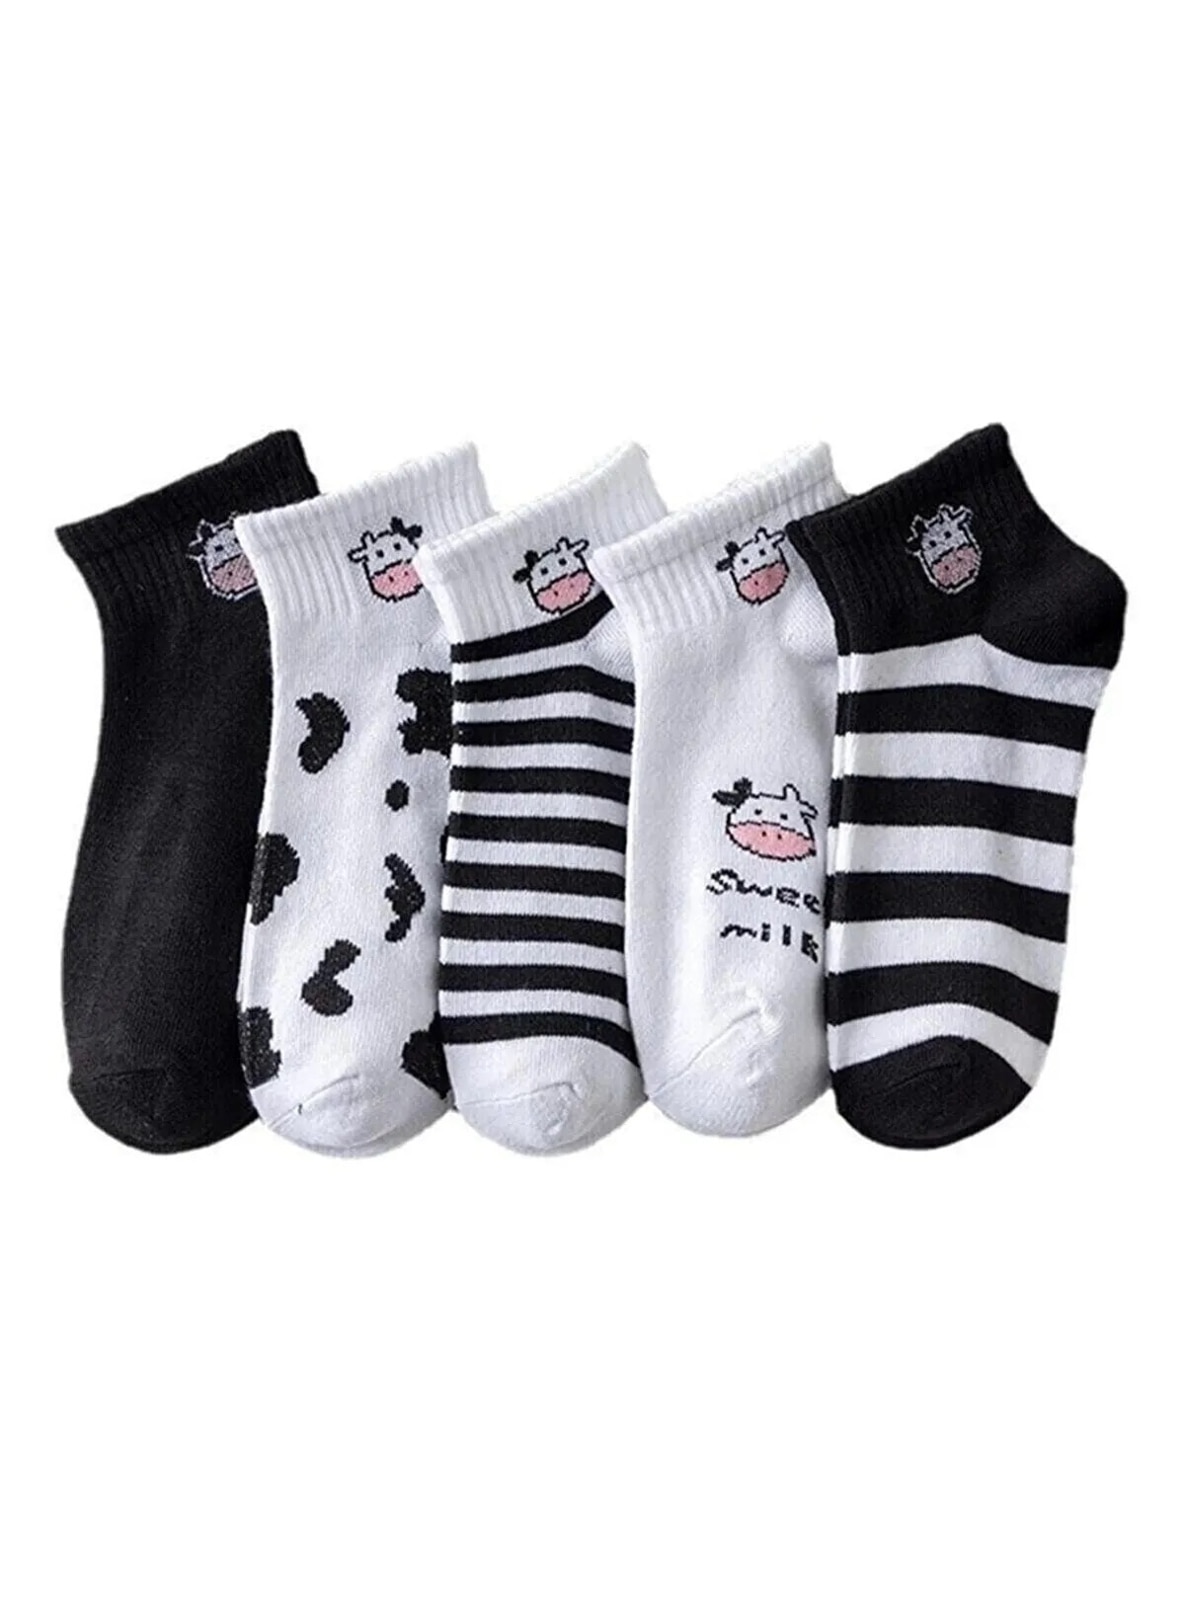 White - Socks